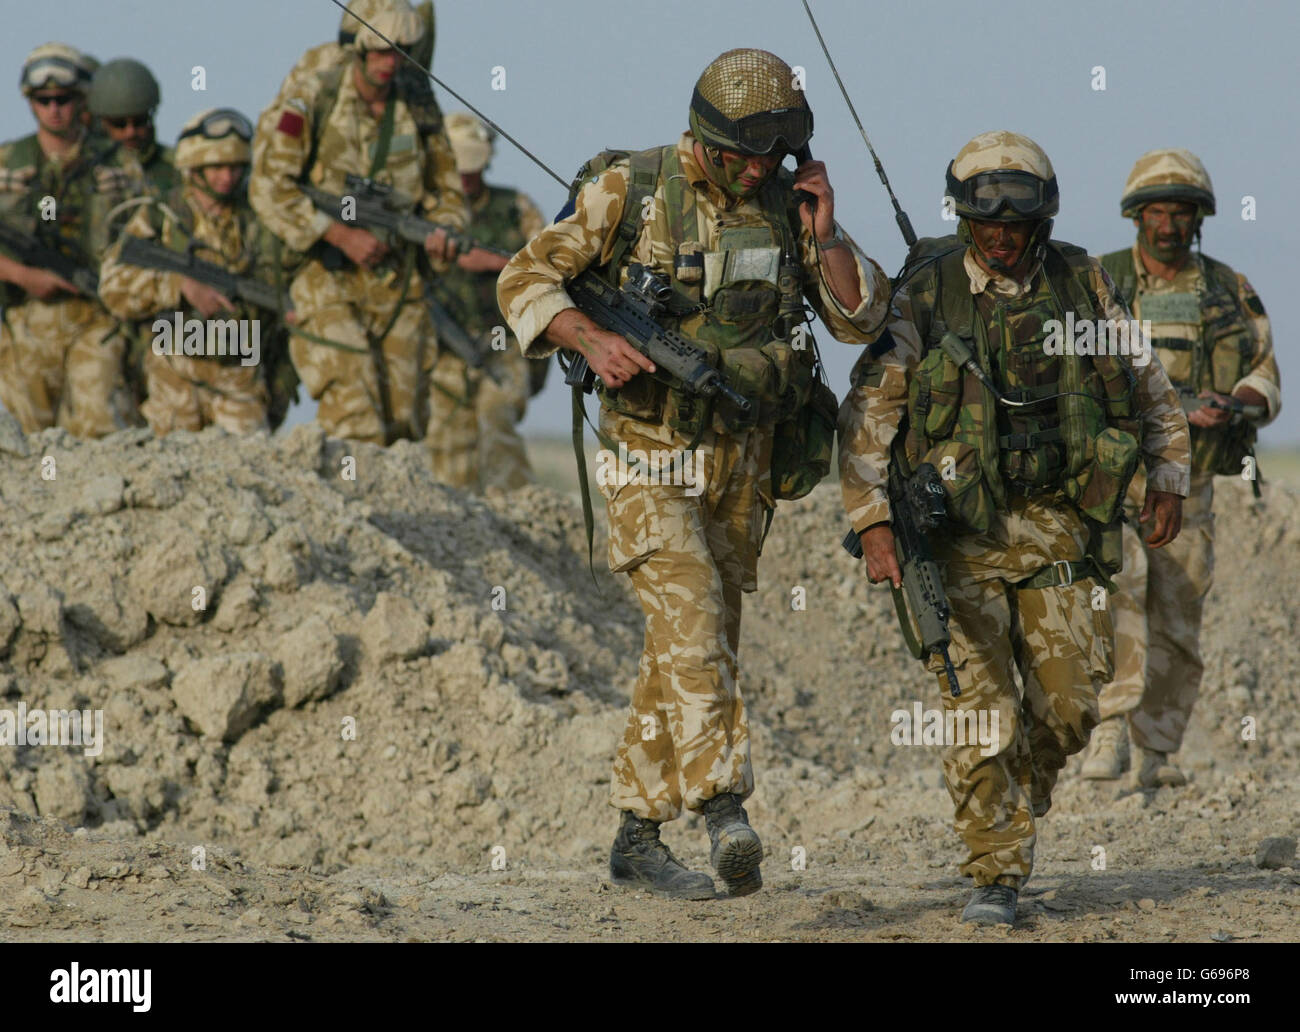 Los soldados del primer Batallón el Regimiento de Paracaidistas buscan campos de agricultores al noroeste de Basora en el sur de Irak, mientras realizan una operación de limpieza al amanecer. Los soldados iraquíes huyeron hacia el este dejando morteros, municiones y alimentos detrás después de ser capturados por sorpresa. 24/06/2003: Ocho soldados británicos del Regimiento han sido heridos - dos críticos - en un incidente cerca de Basora, fuentes de defensa dijeron, martes 24 de junio de 2003. El primer Batallón del Regimiento de Paracaidistas está en Irak como parte de la Brigada de Asalto aéreo 16. Foto de stock